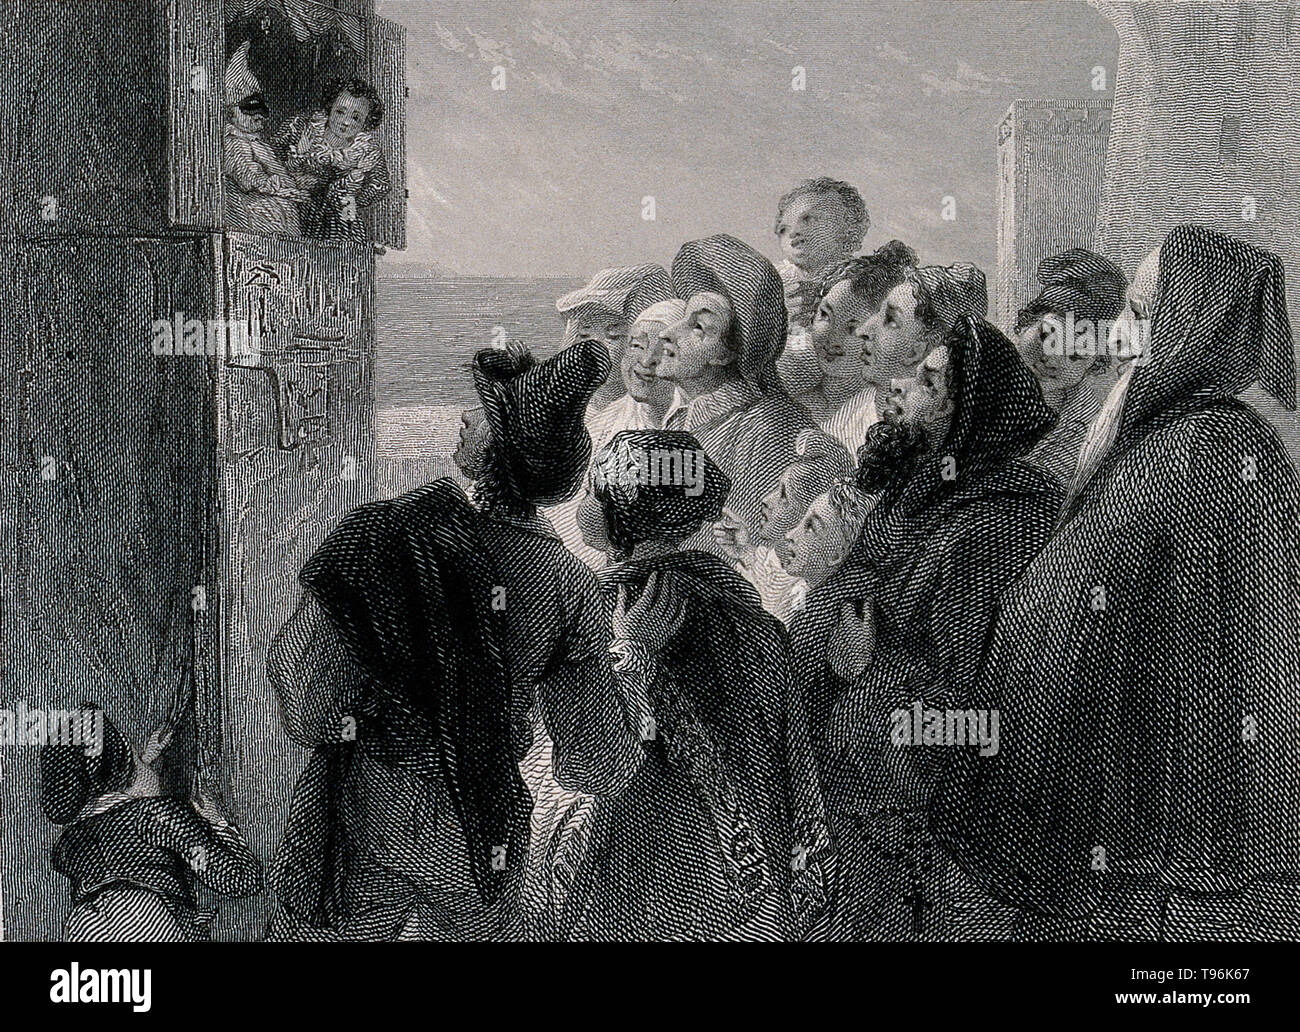 Une foule de gens réunis autour d'un stand dans la rue pour regarder un Punch and Judy show à Naples, Italie. Gravure de J. Goodyear après T. Uwins, 1834. Banque D'Images